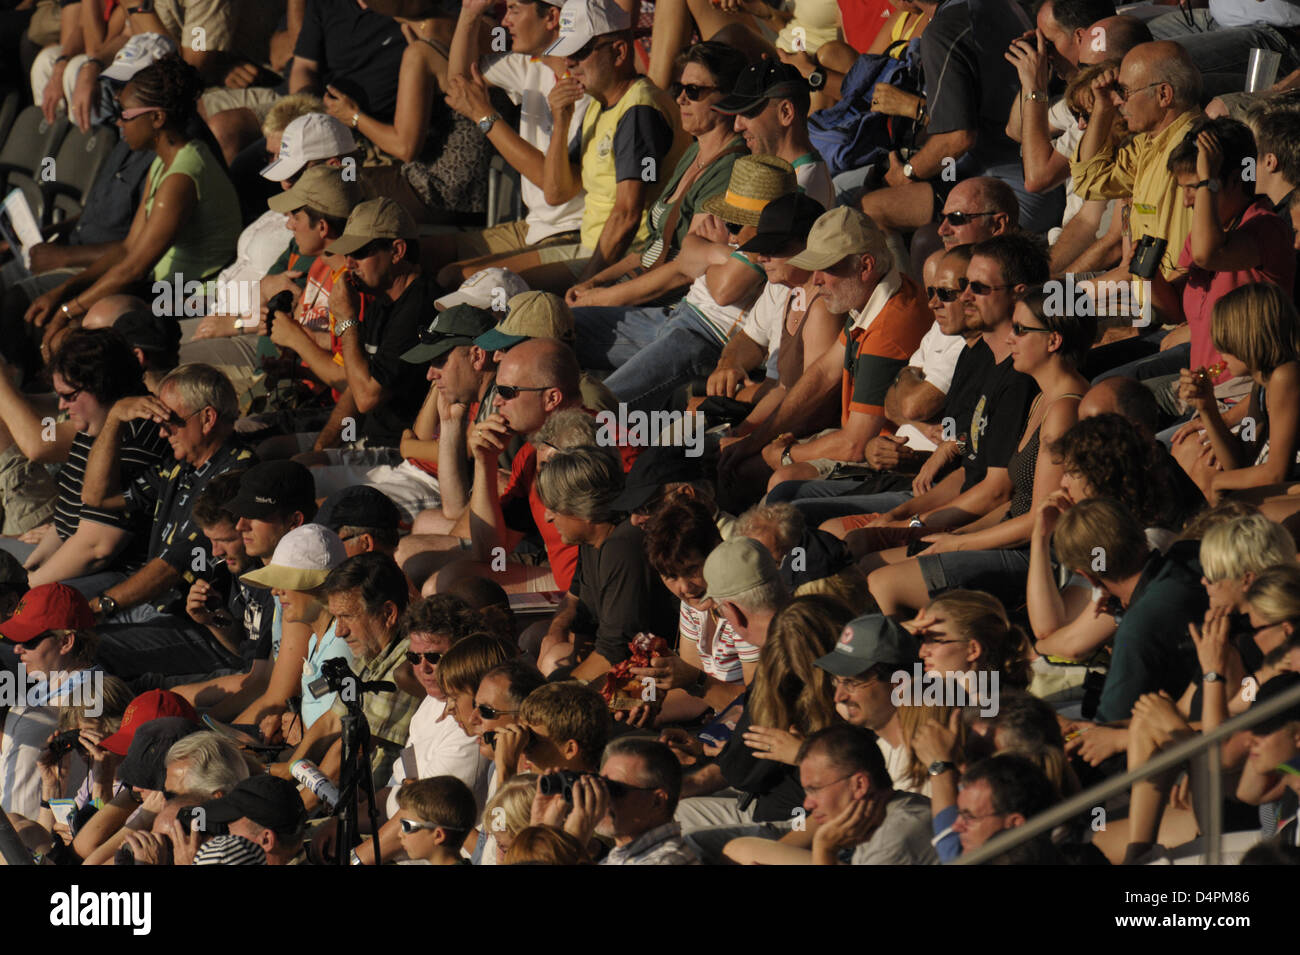 Gli spettatori seduti sulle tribune del XII IAAF Campionati del Mondo di atletica leggera presso lo Stadio Olimpico di Berlino, Germania, 17 agosto 2009. Foto: Annibale Foto Stock